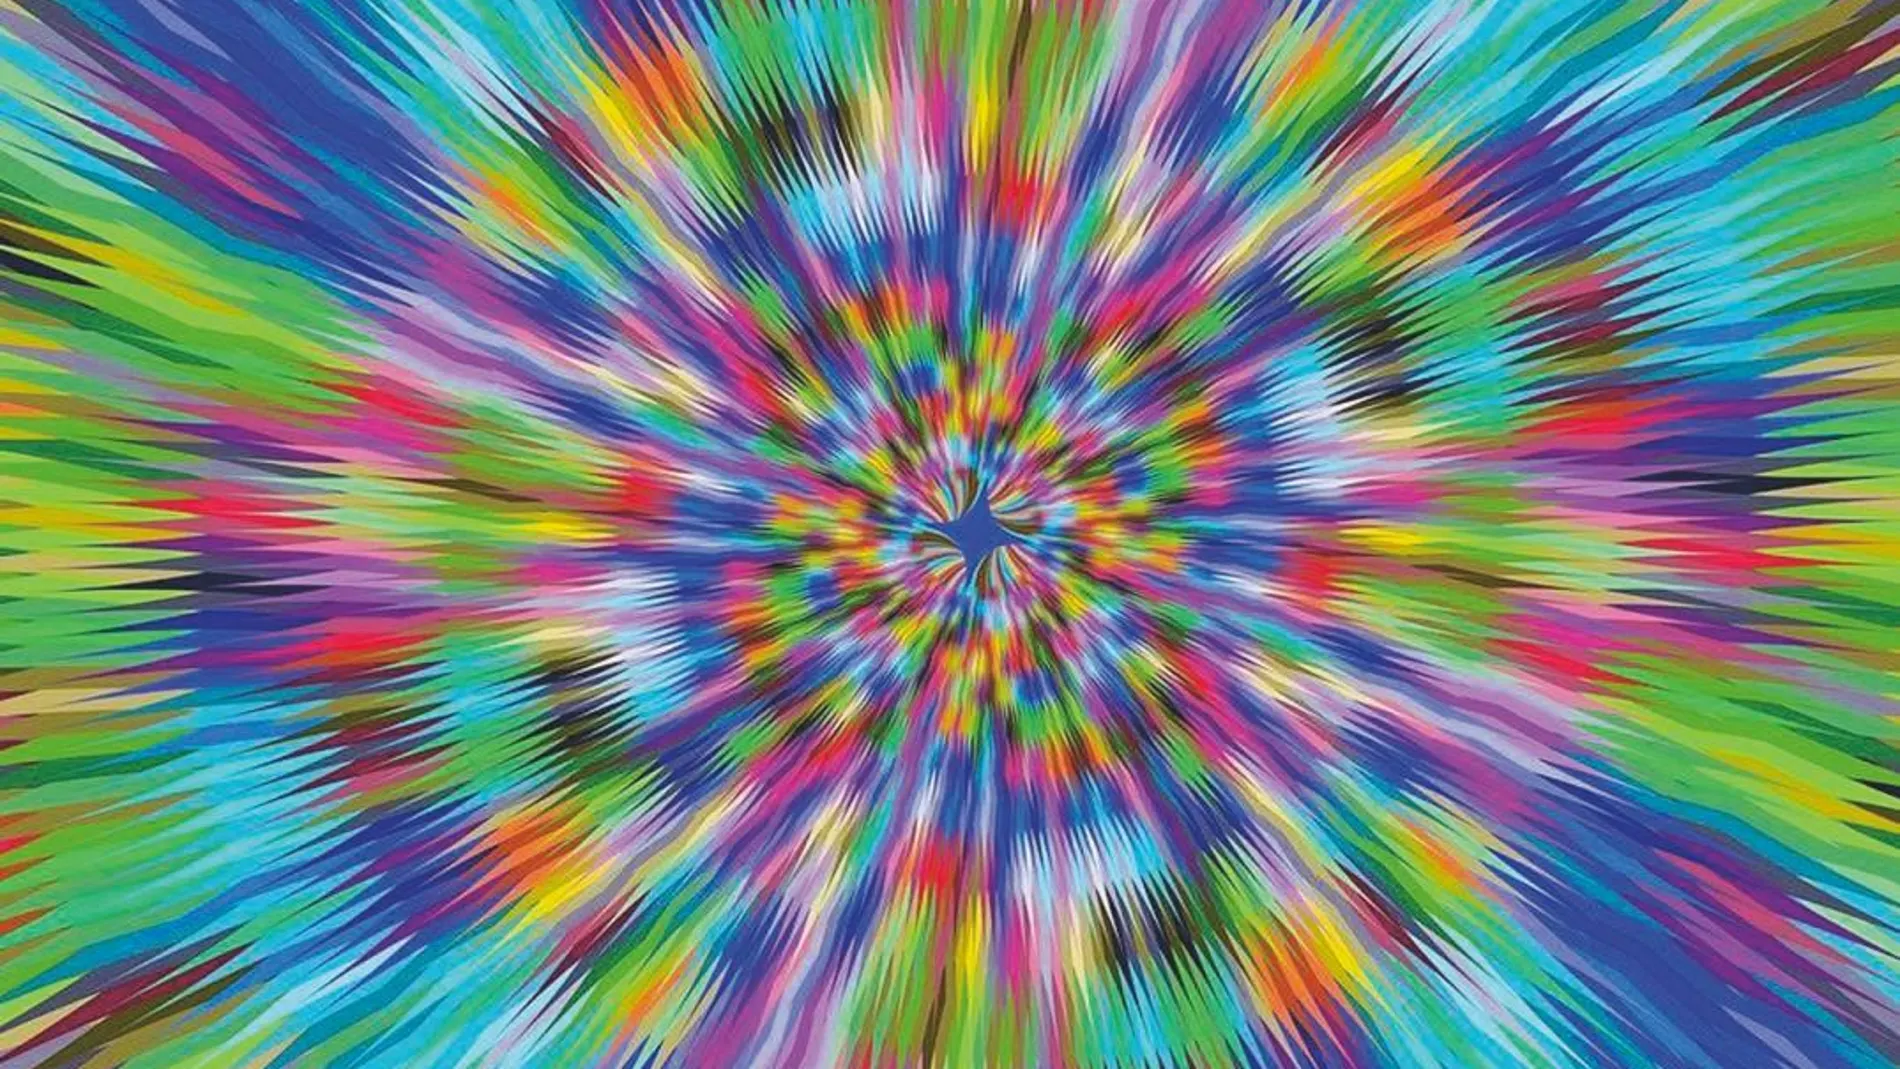 En ciertos sectores profesionales y artísticos empieza a extenderse el uso de drogas alucinógenas como el LSD en pequeñísimas dosis